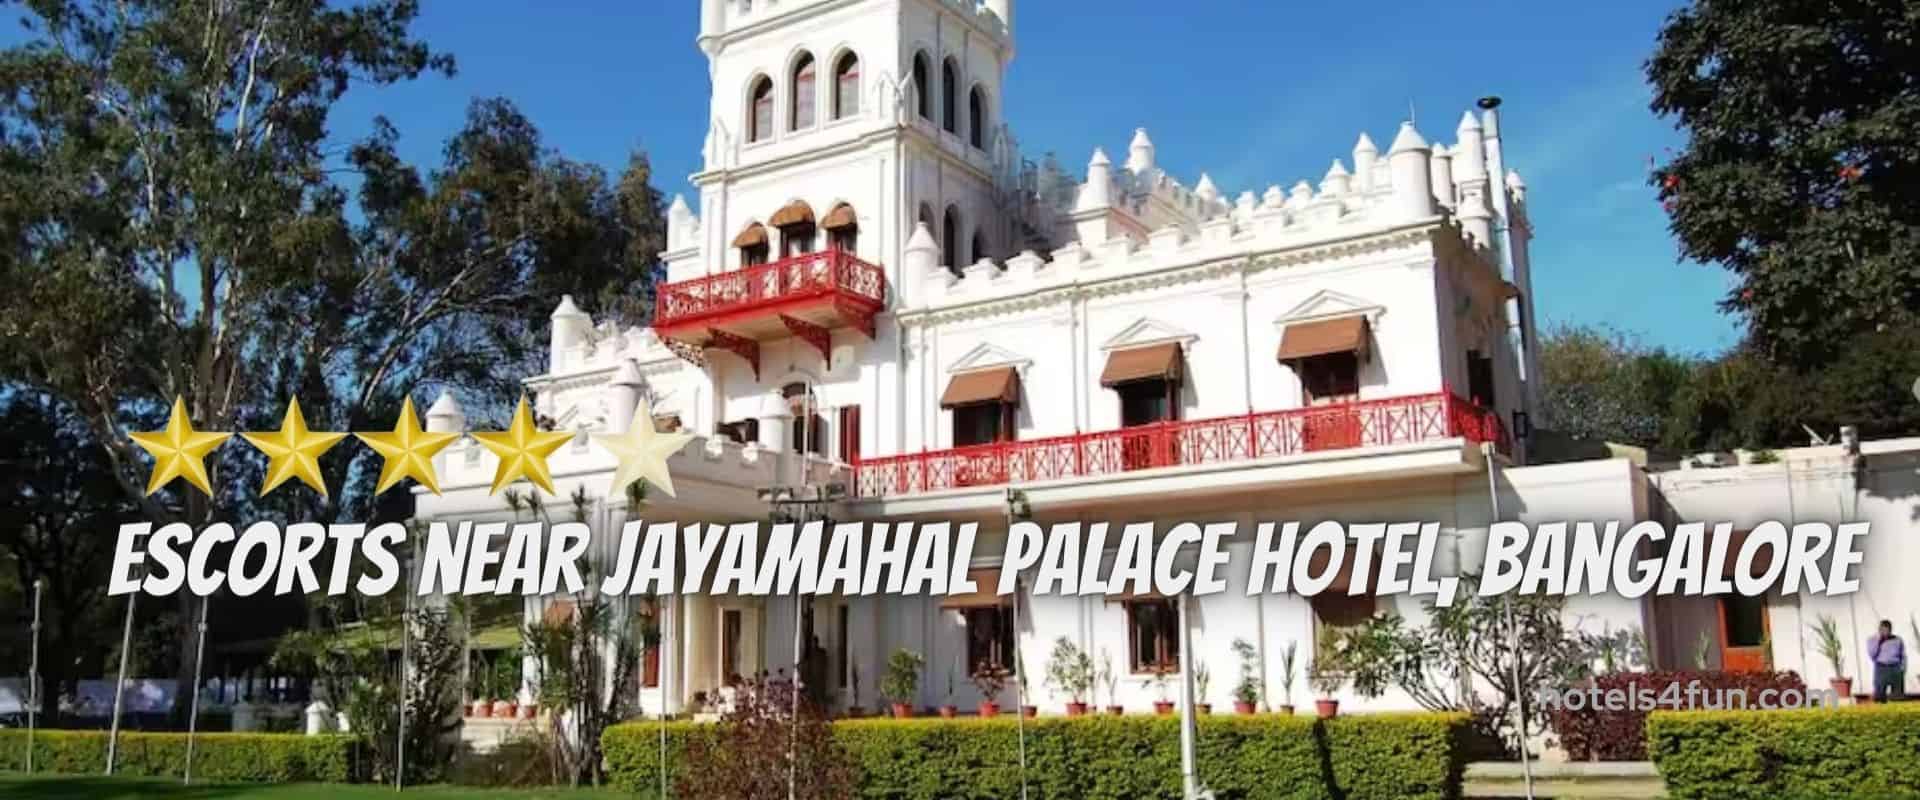 escorts-near-jayamahal-palace-hotel-bangalore Hotel Escorts